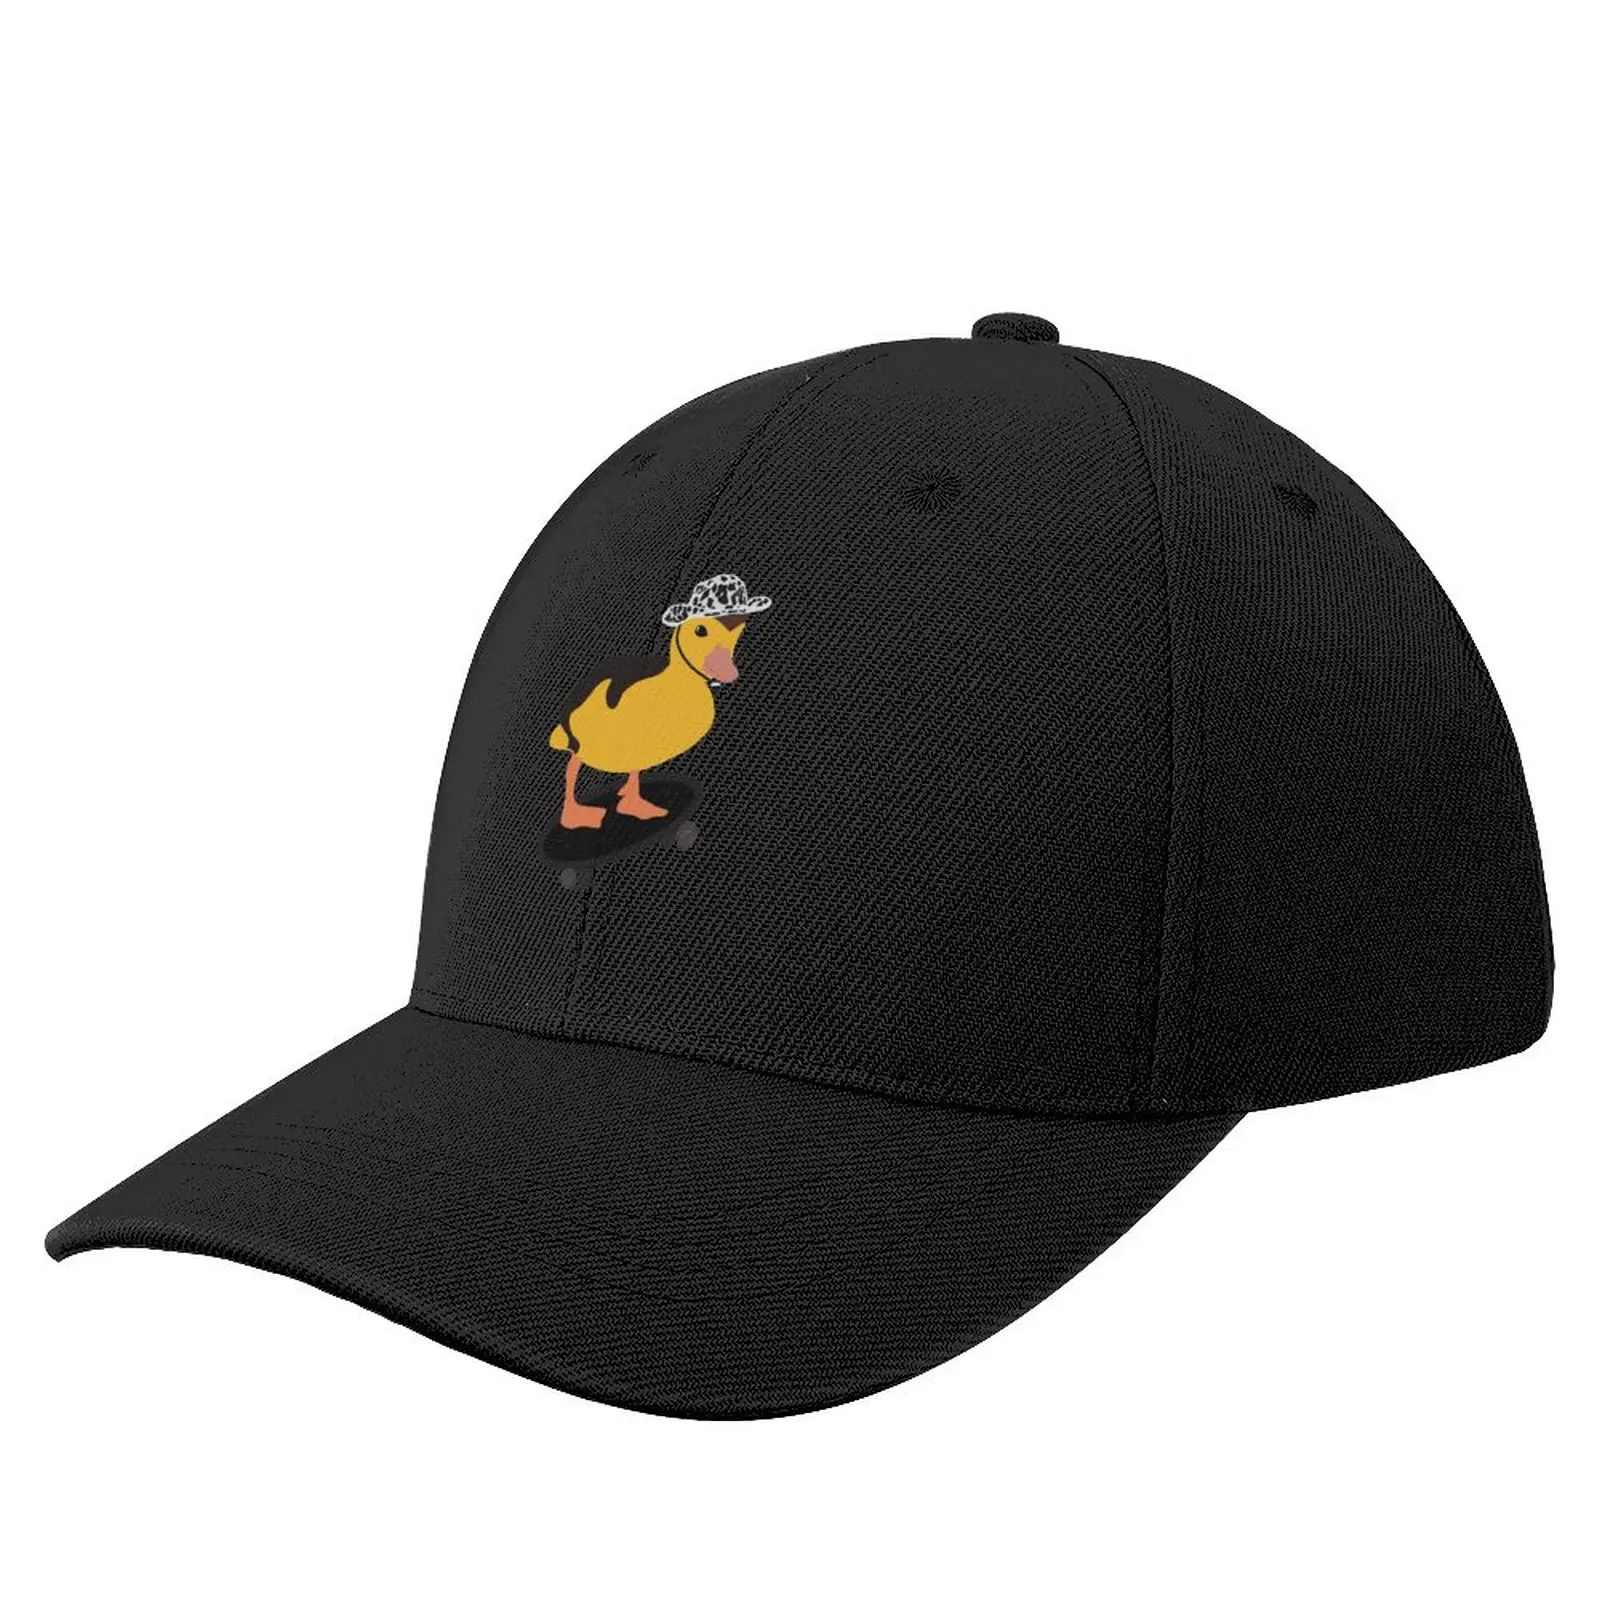 

Skater duck Baseball Cap Trucker Hat Snap Back Hat Hat Luxury Brand derby hat Caps For Women Men's